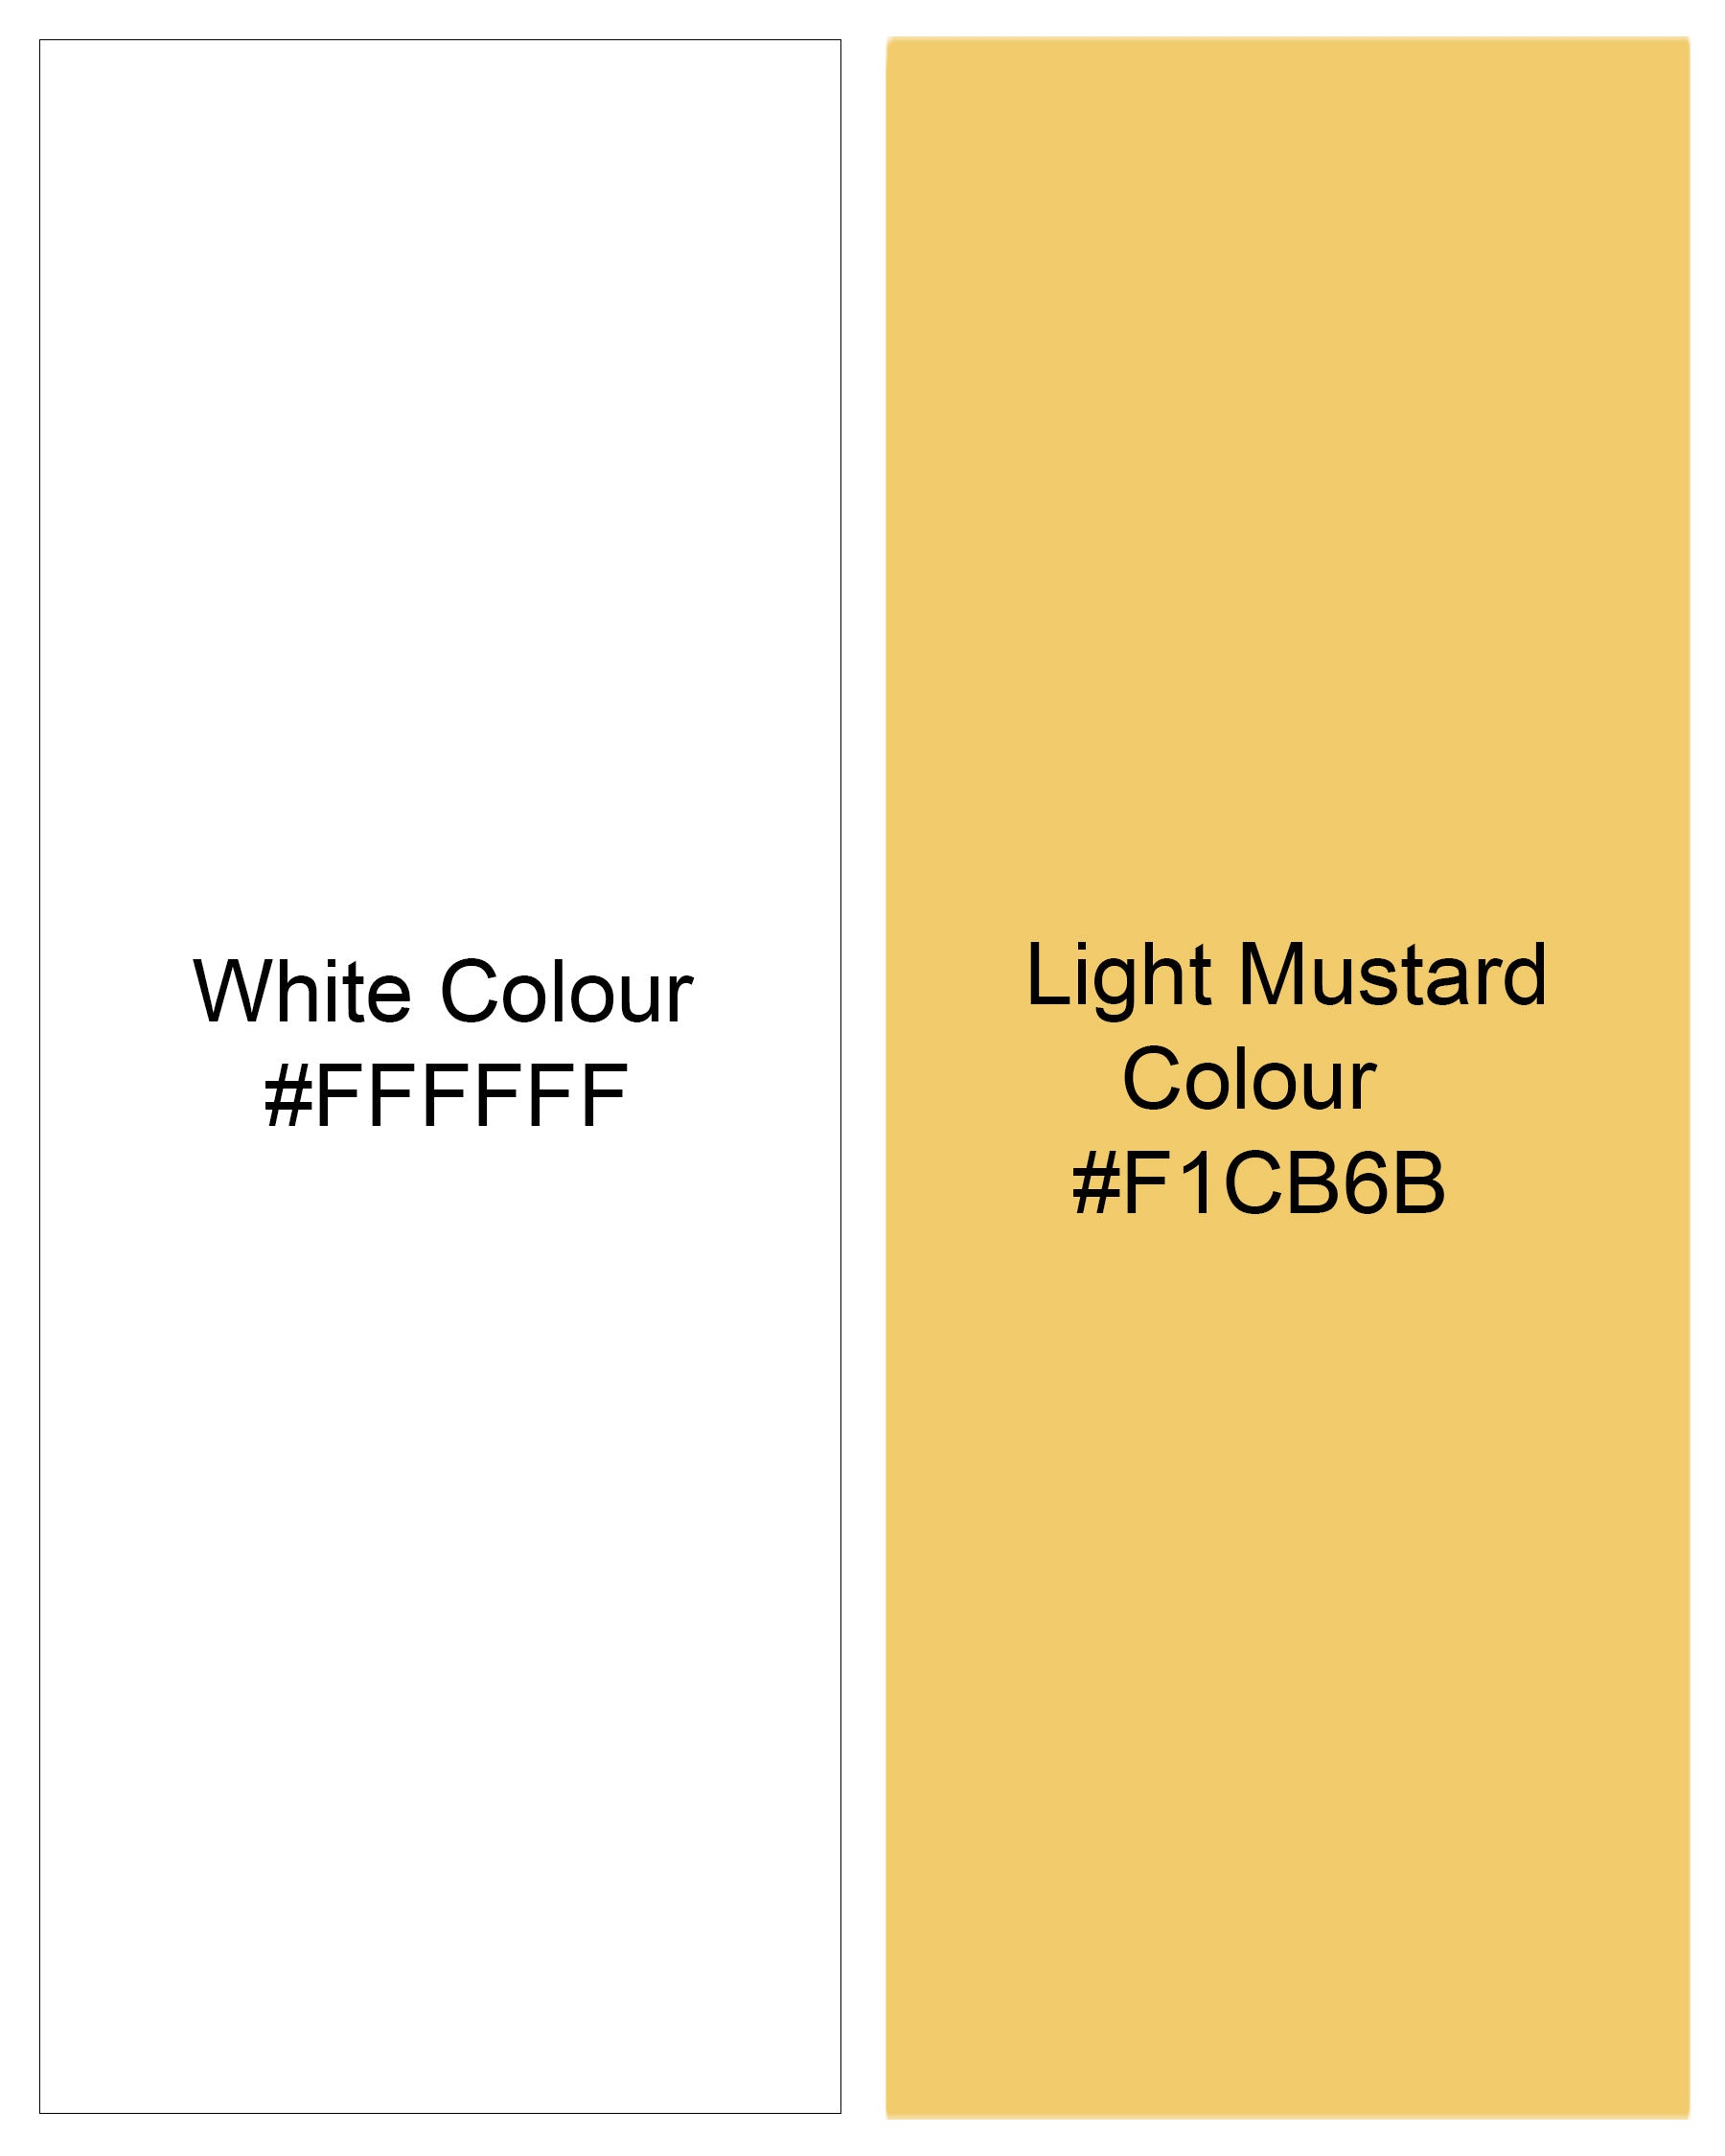 Light Mustard Yellow and White Striped Premium Cotton Shirt 7866-BD -38,7866-BD -H-38,7866-BD -39,7866-BD -H-39,7866-BD -40,7866-BD -H-40,7866-BD -42,7866-BD -H-42,7866-BD -44,7866-BD -H-44,7866-BD -46,7866-BD -H-46,7866-BD -48,7866-BD -H-48,7866-BD -50,7866-BD -H-50,7866-BD -52,7866-BD -H-52